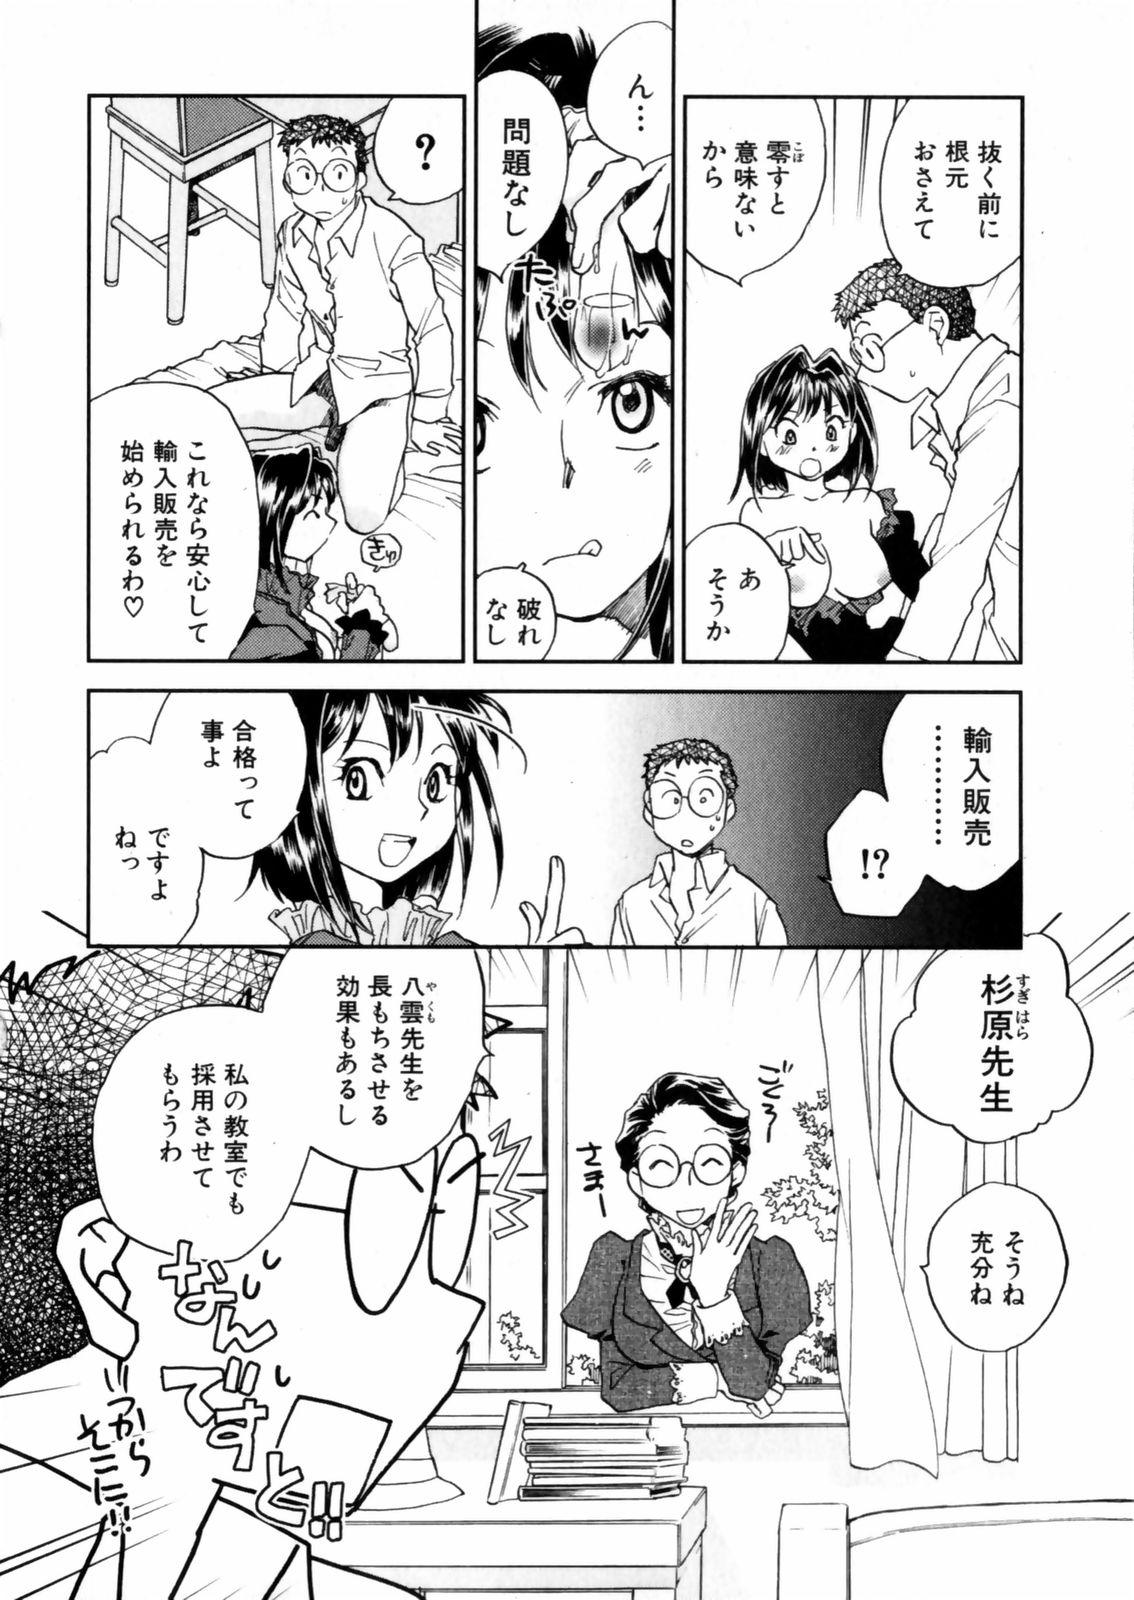 [Okano Ahiru] Hanasake ! Otome Juku (Otome Private Tutoring School) Vol.2 59